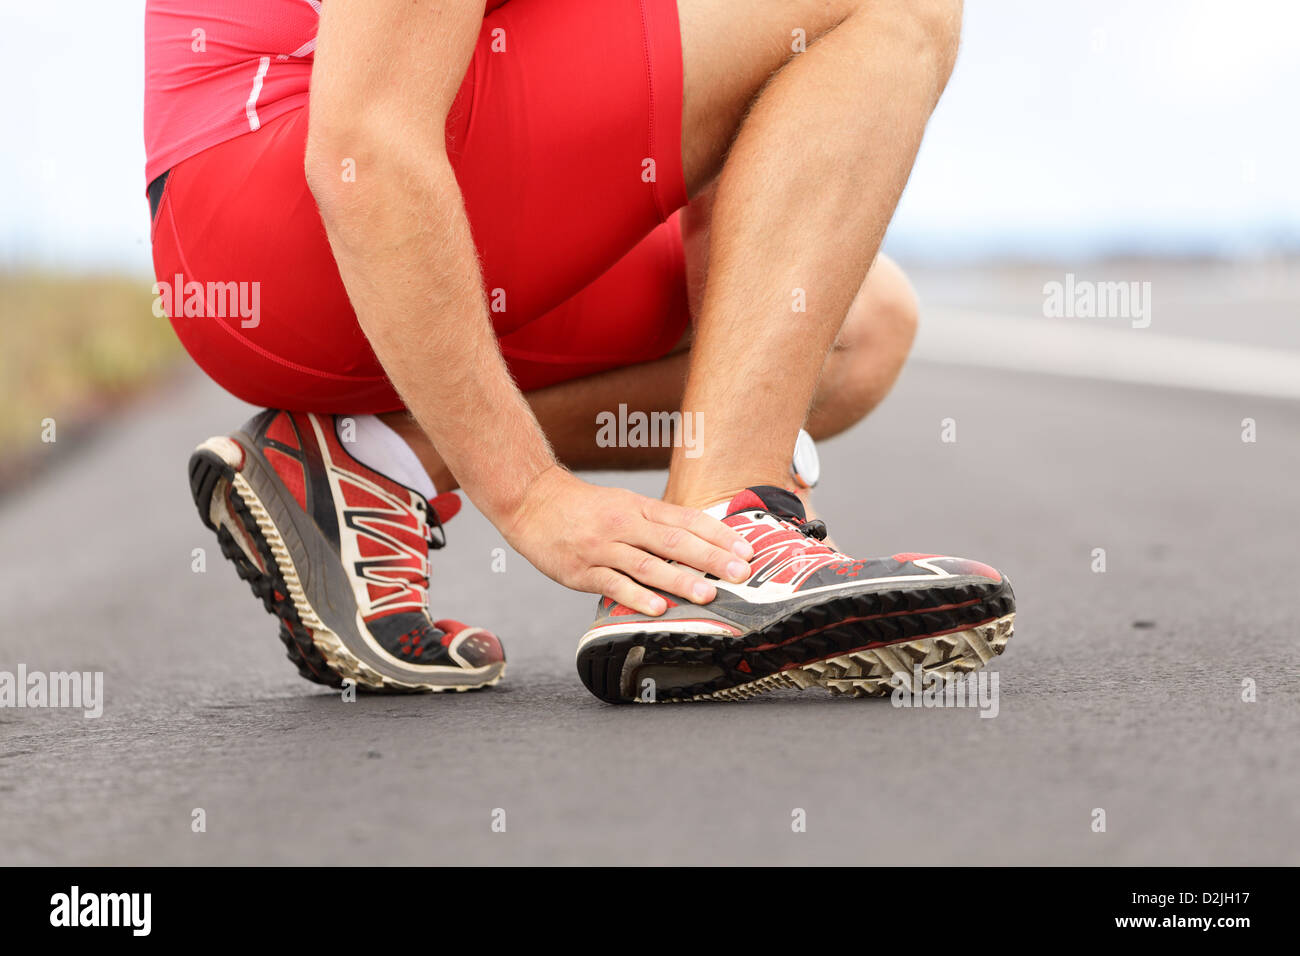 La section basse de young male runner toucher pied dans la douleur à cause de l'entorse de la cheville sur la route Banque D'Images